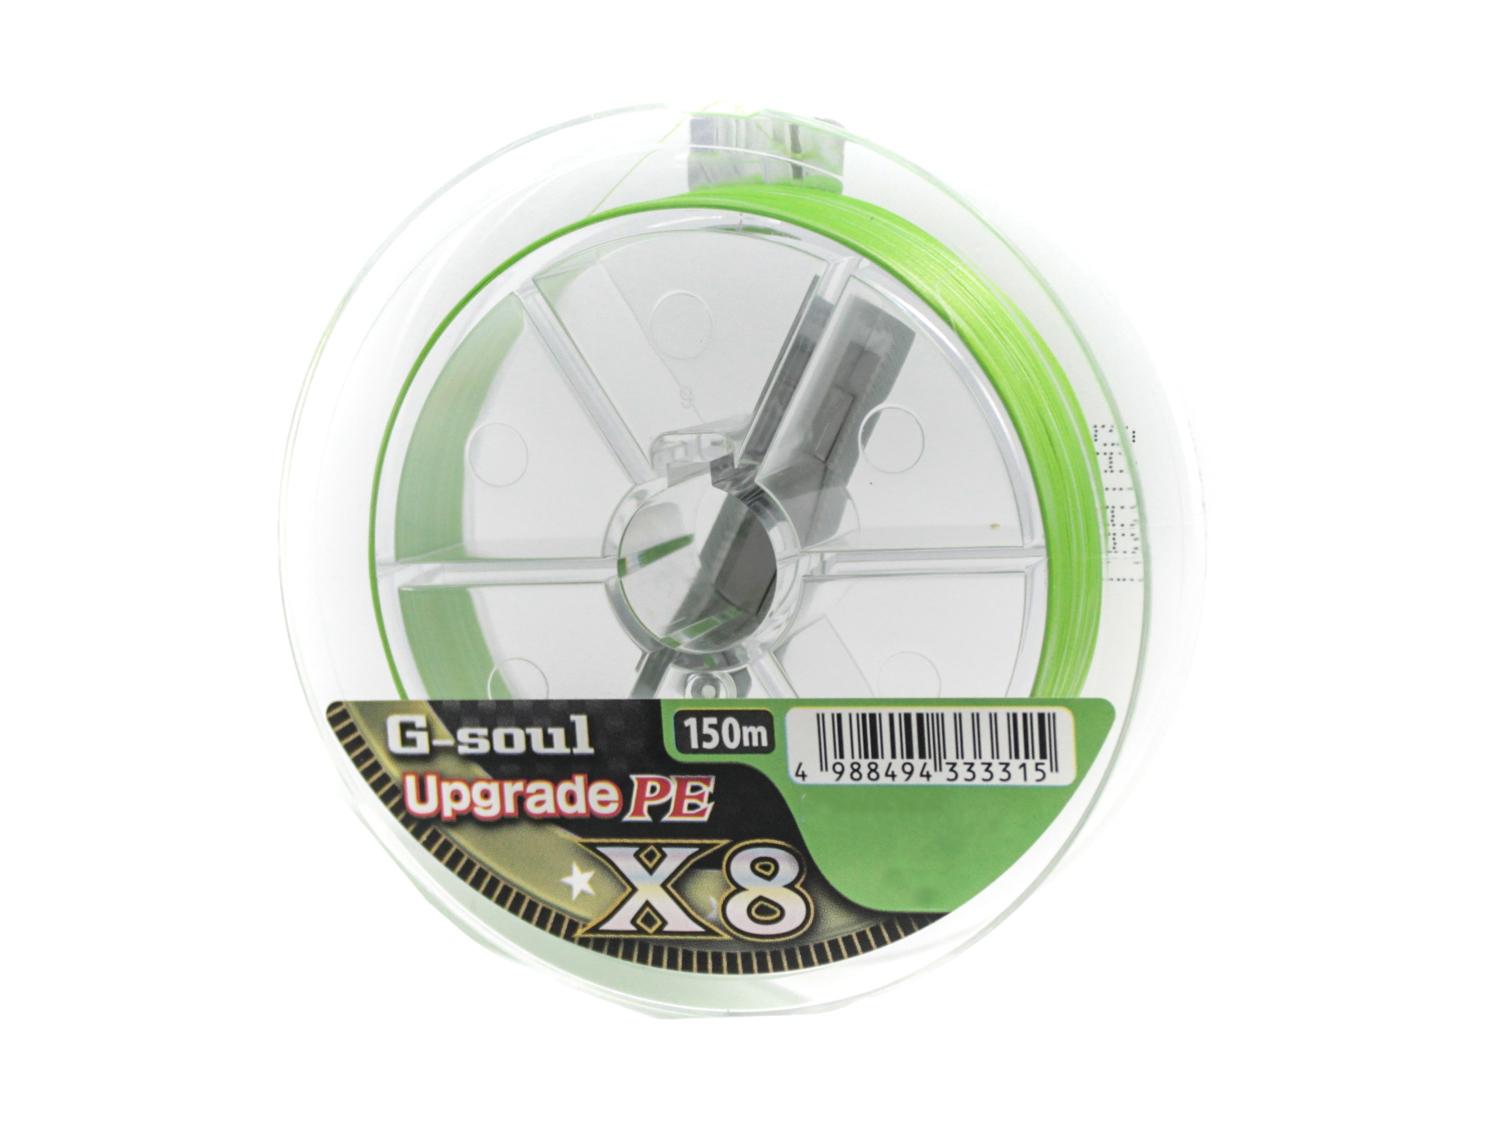 Шнур YGK G-Soul Upgrade X8 150м PE 1,0 22lb Lime Green